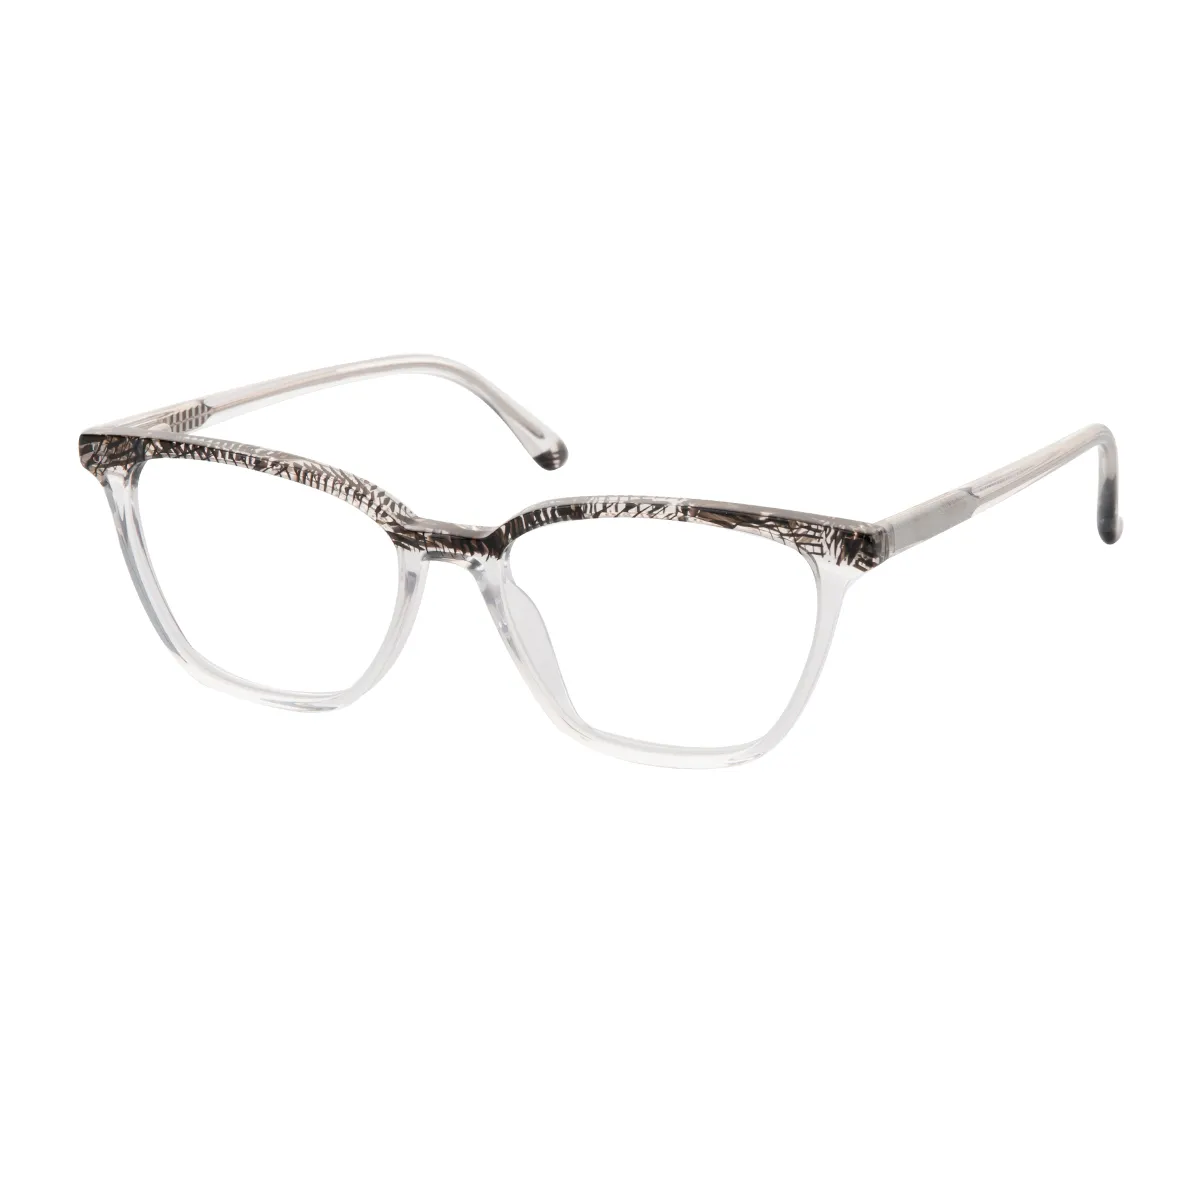 Kary - Cat-eye Black-Translucent Glasses for Women - EFE